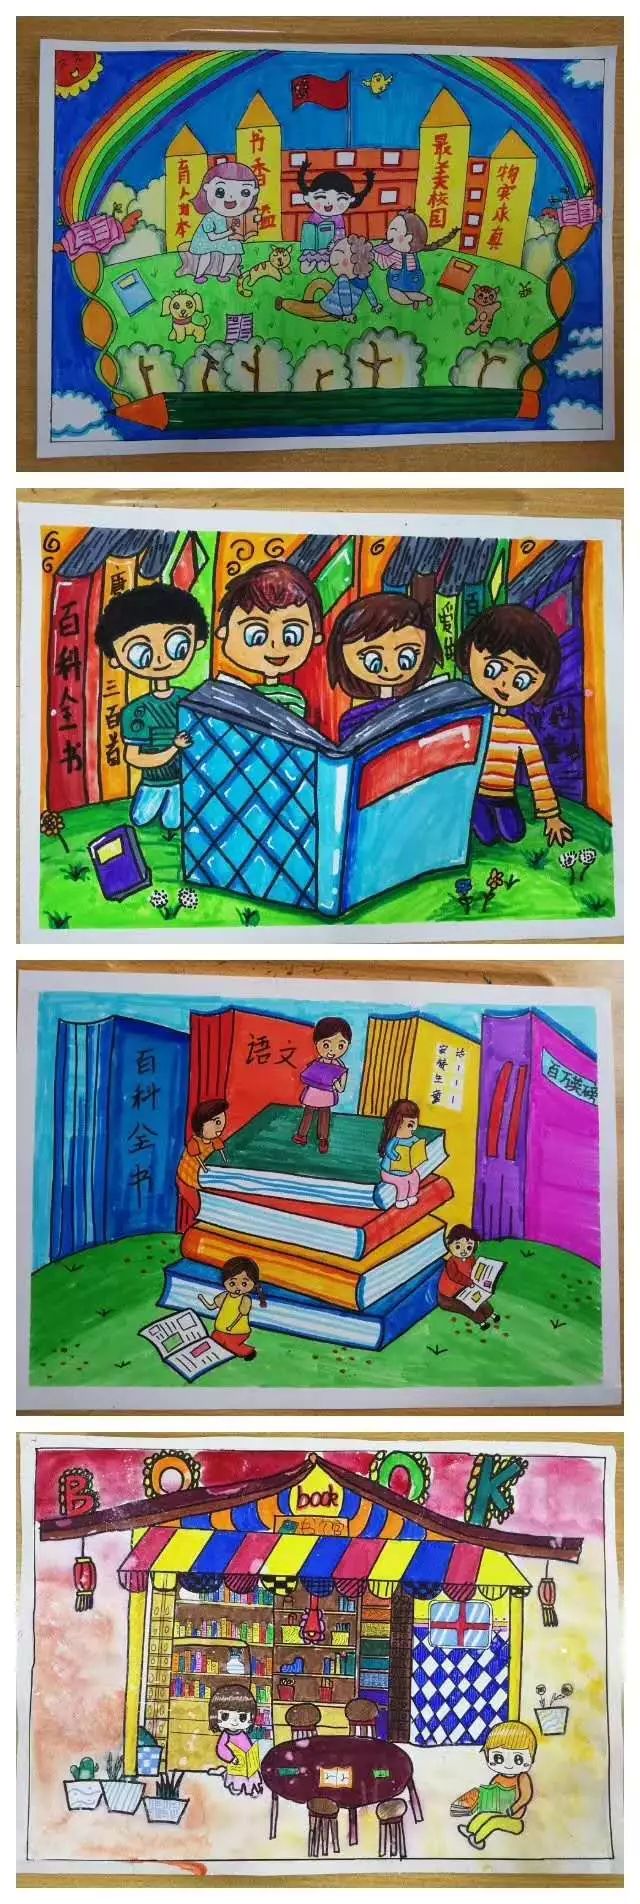 ——2019横沥镇第十五届读书节"阅读,链接美好生活"儿童现场绘画大赛